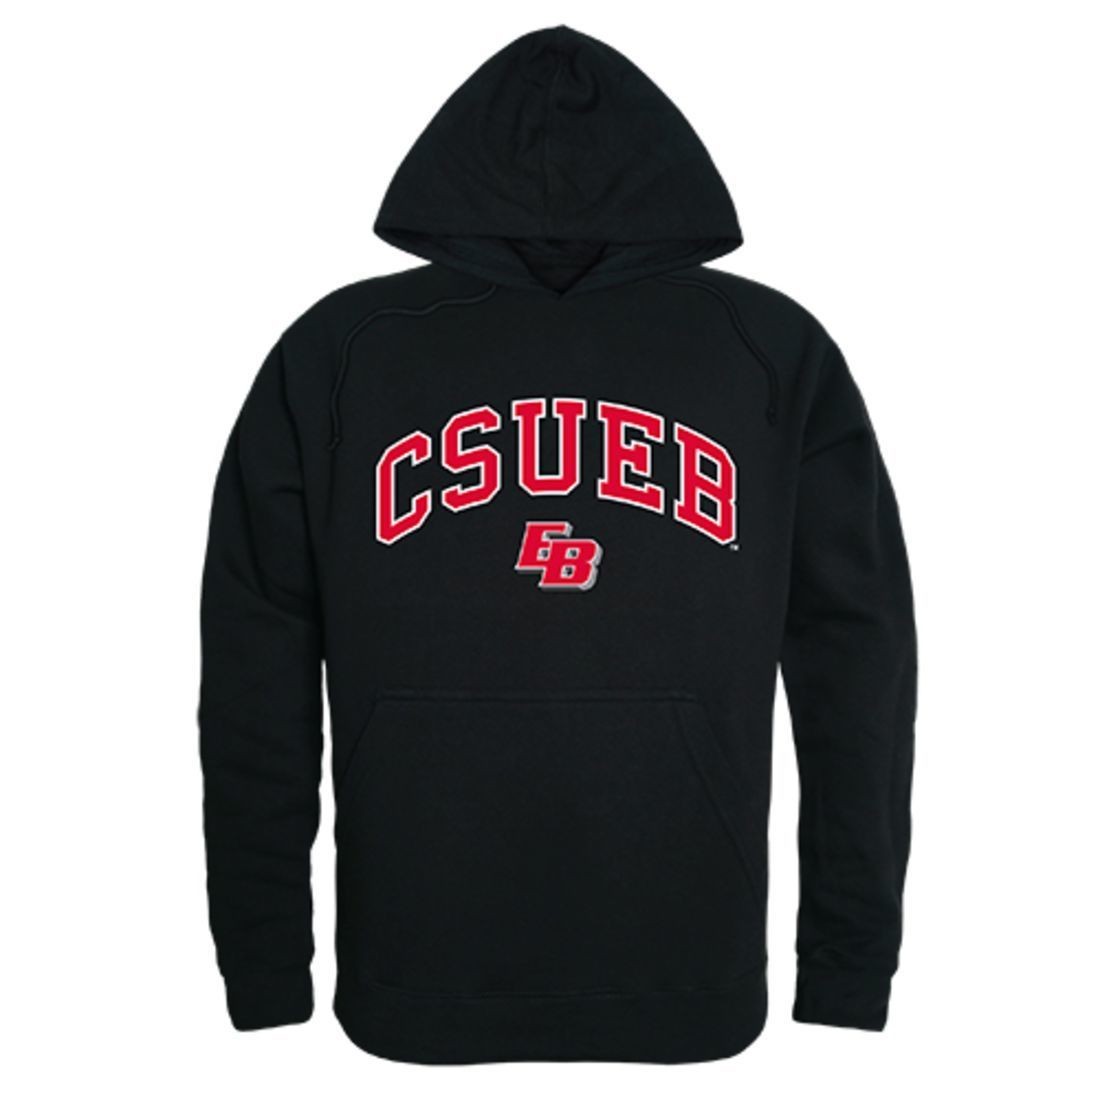 California State University, East Bay Pioneers Campus Hoodie Sweatshirt Black-Campus-Wardrobe